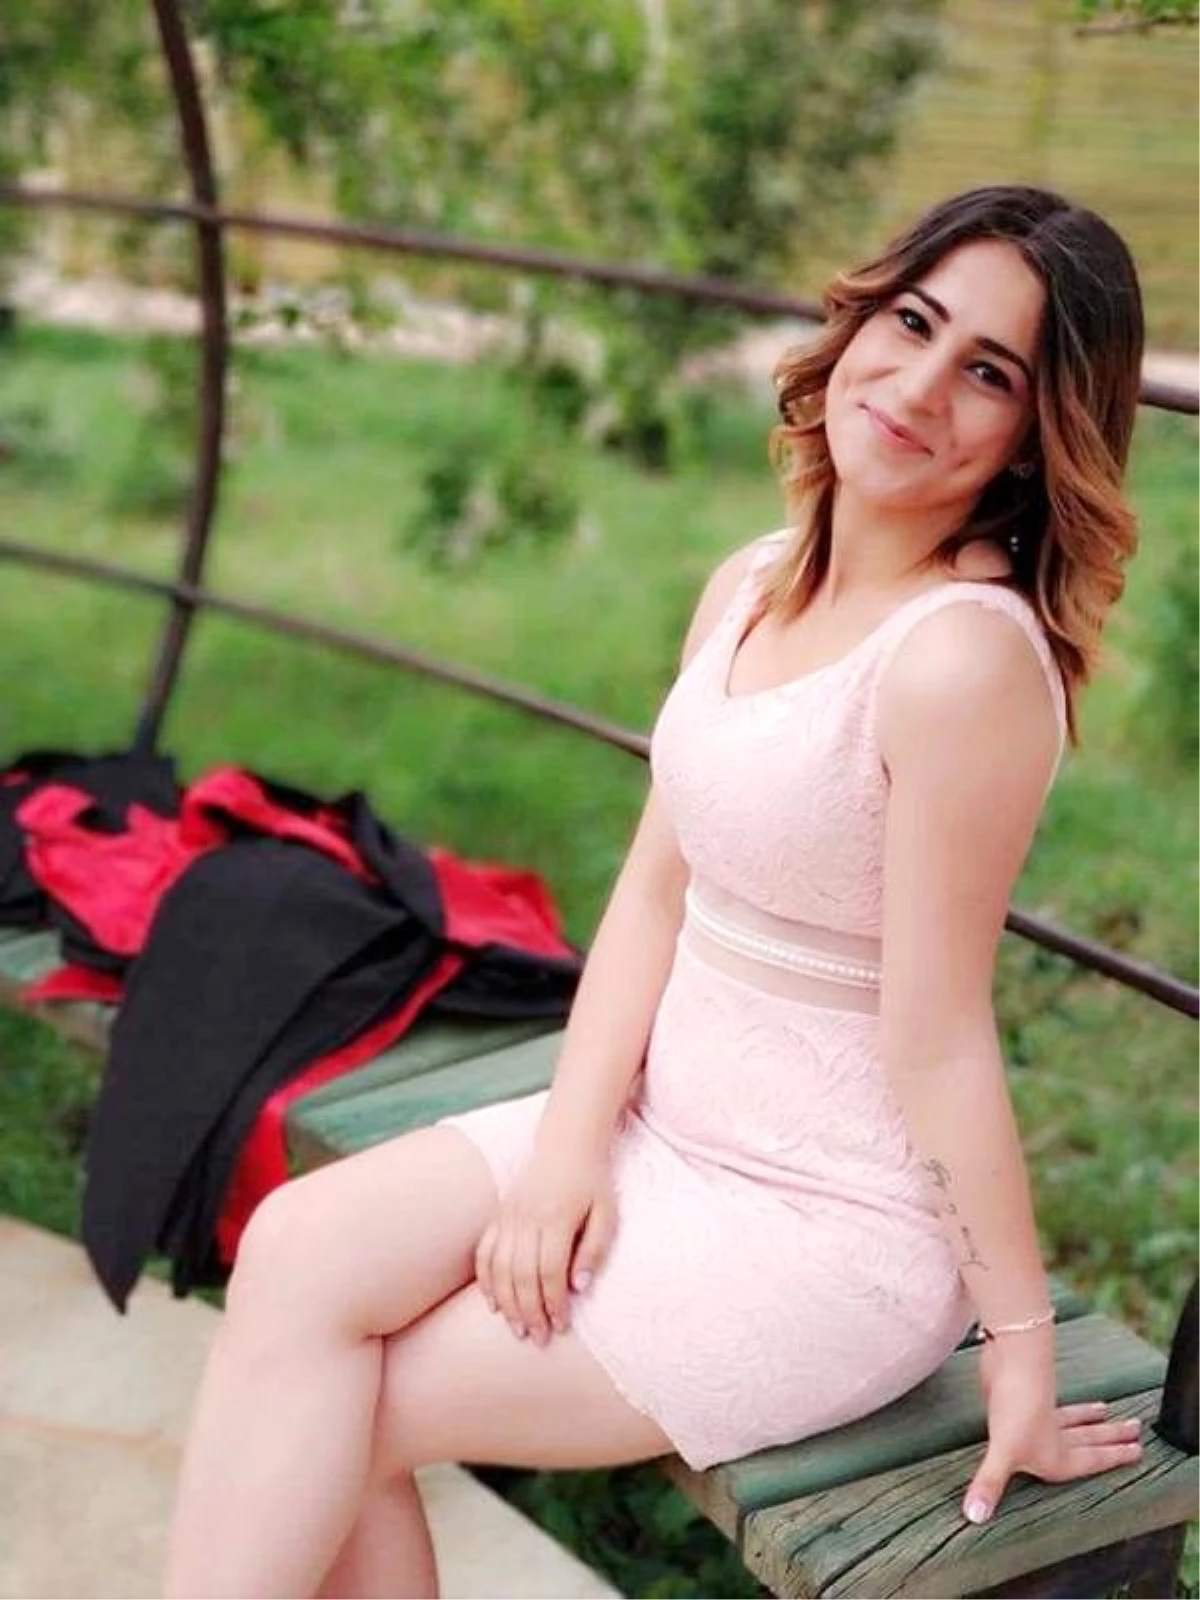 Kazada yaralanan Selvinaz, 463 gün sonra yaşamını yitirdi